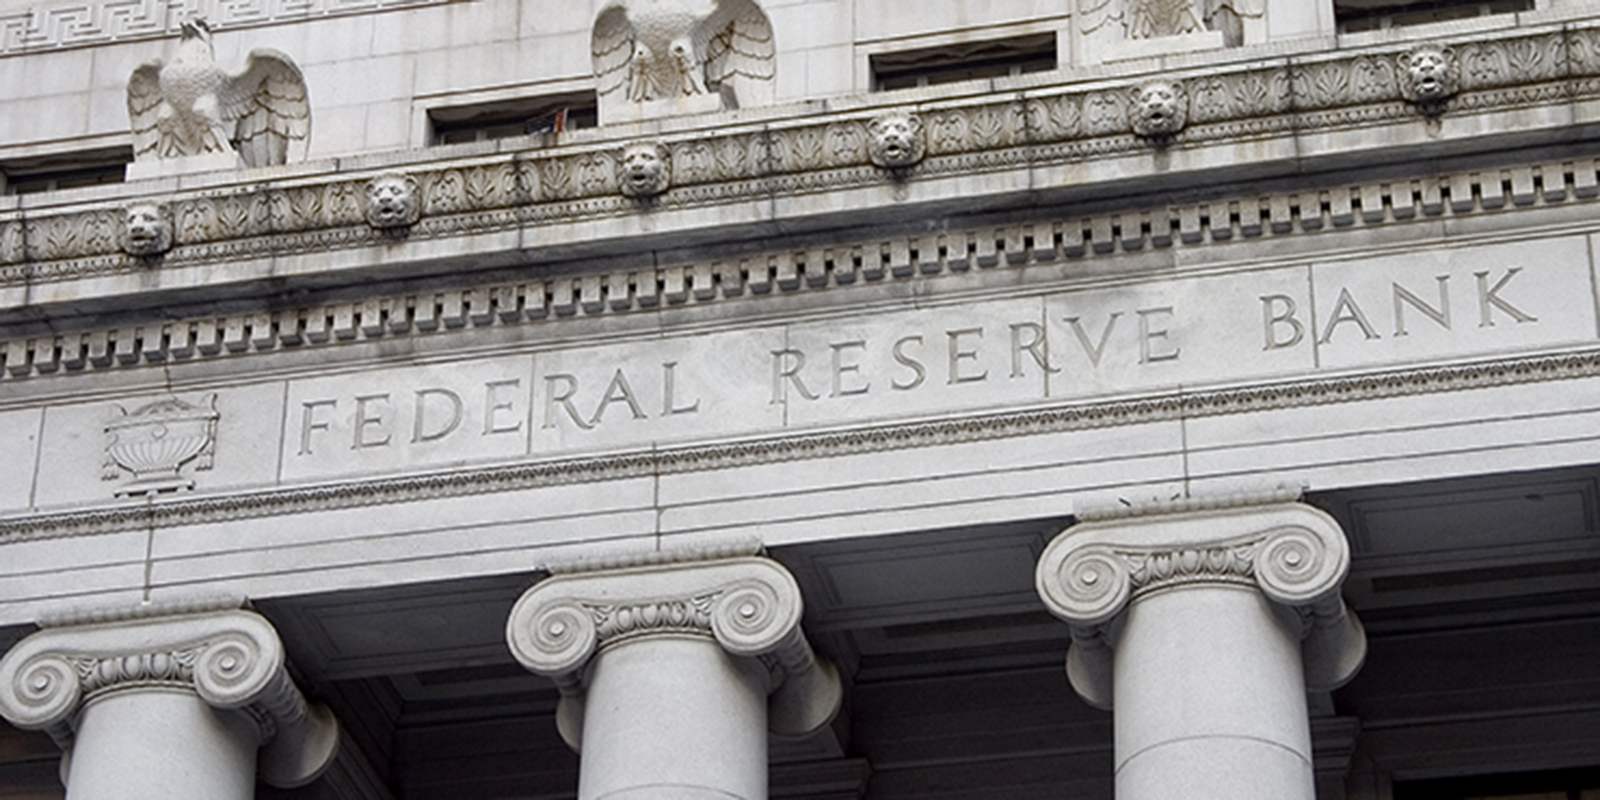 Federal Reserve Facade 1